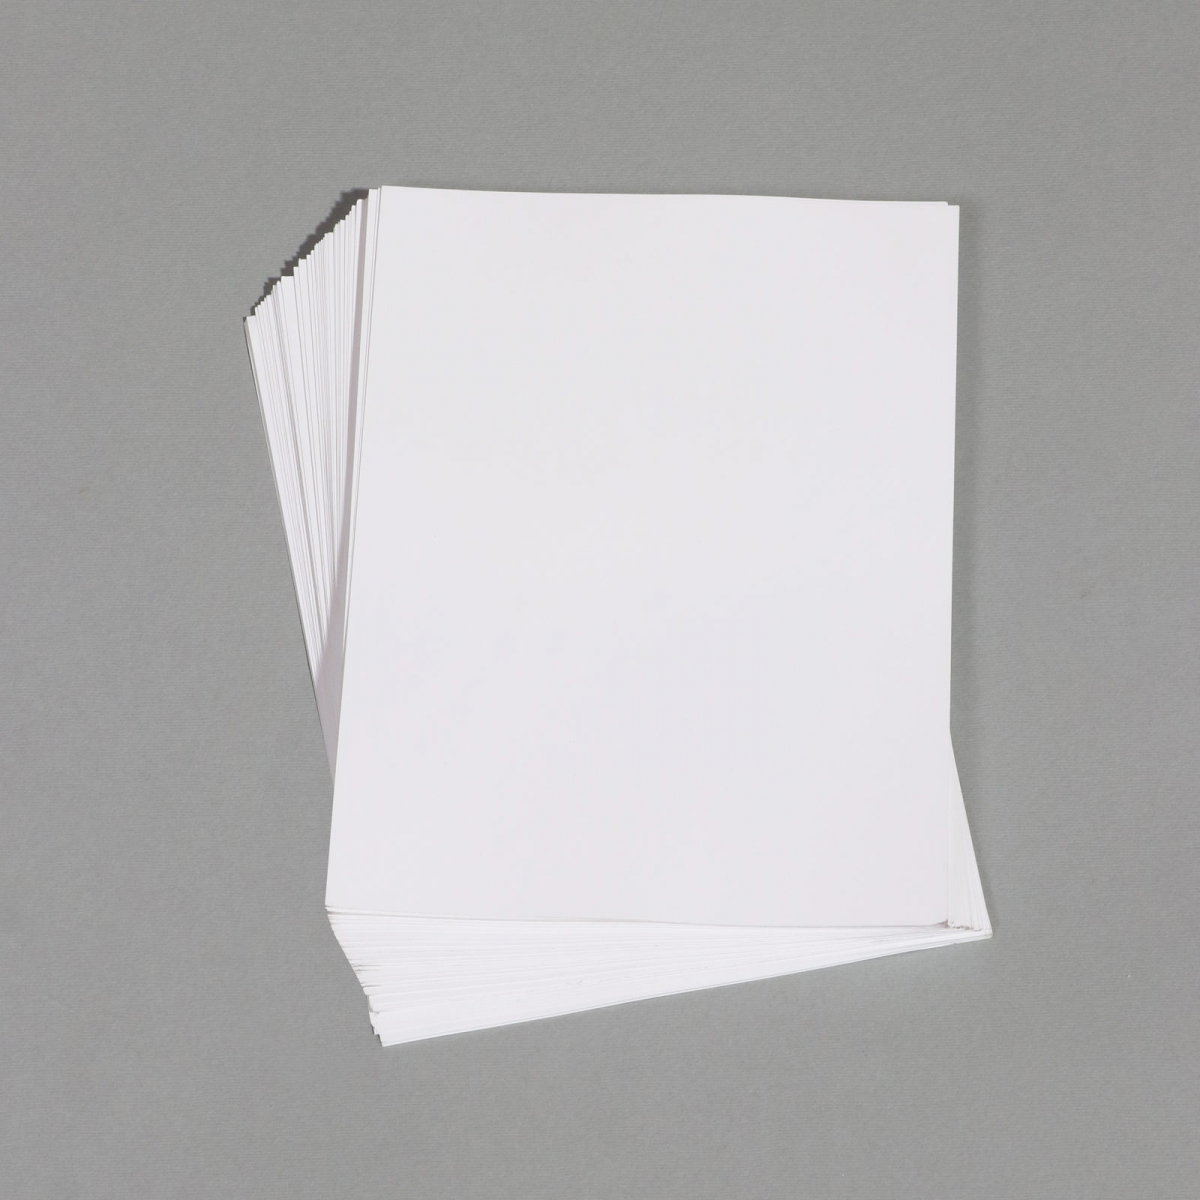 کاغذ گلاسه مات 135 گرم سایز 21x30 سانتی متر بسته 50 عددی